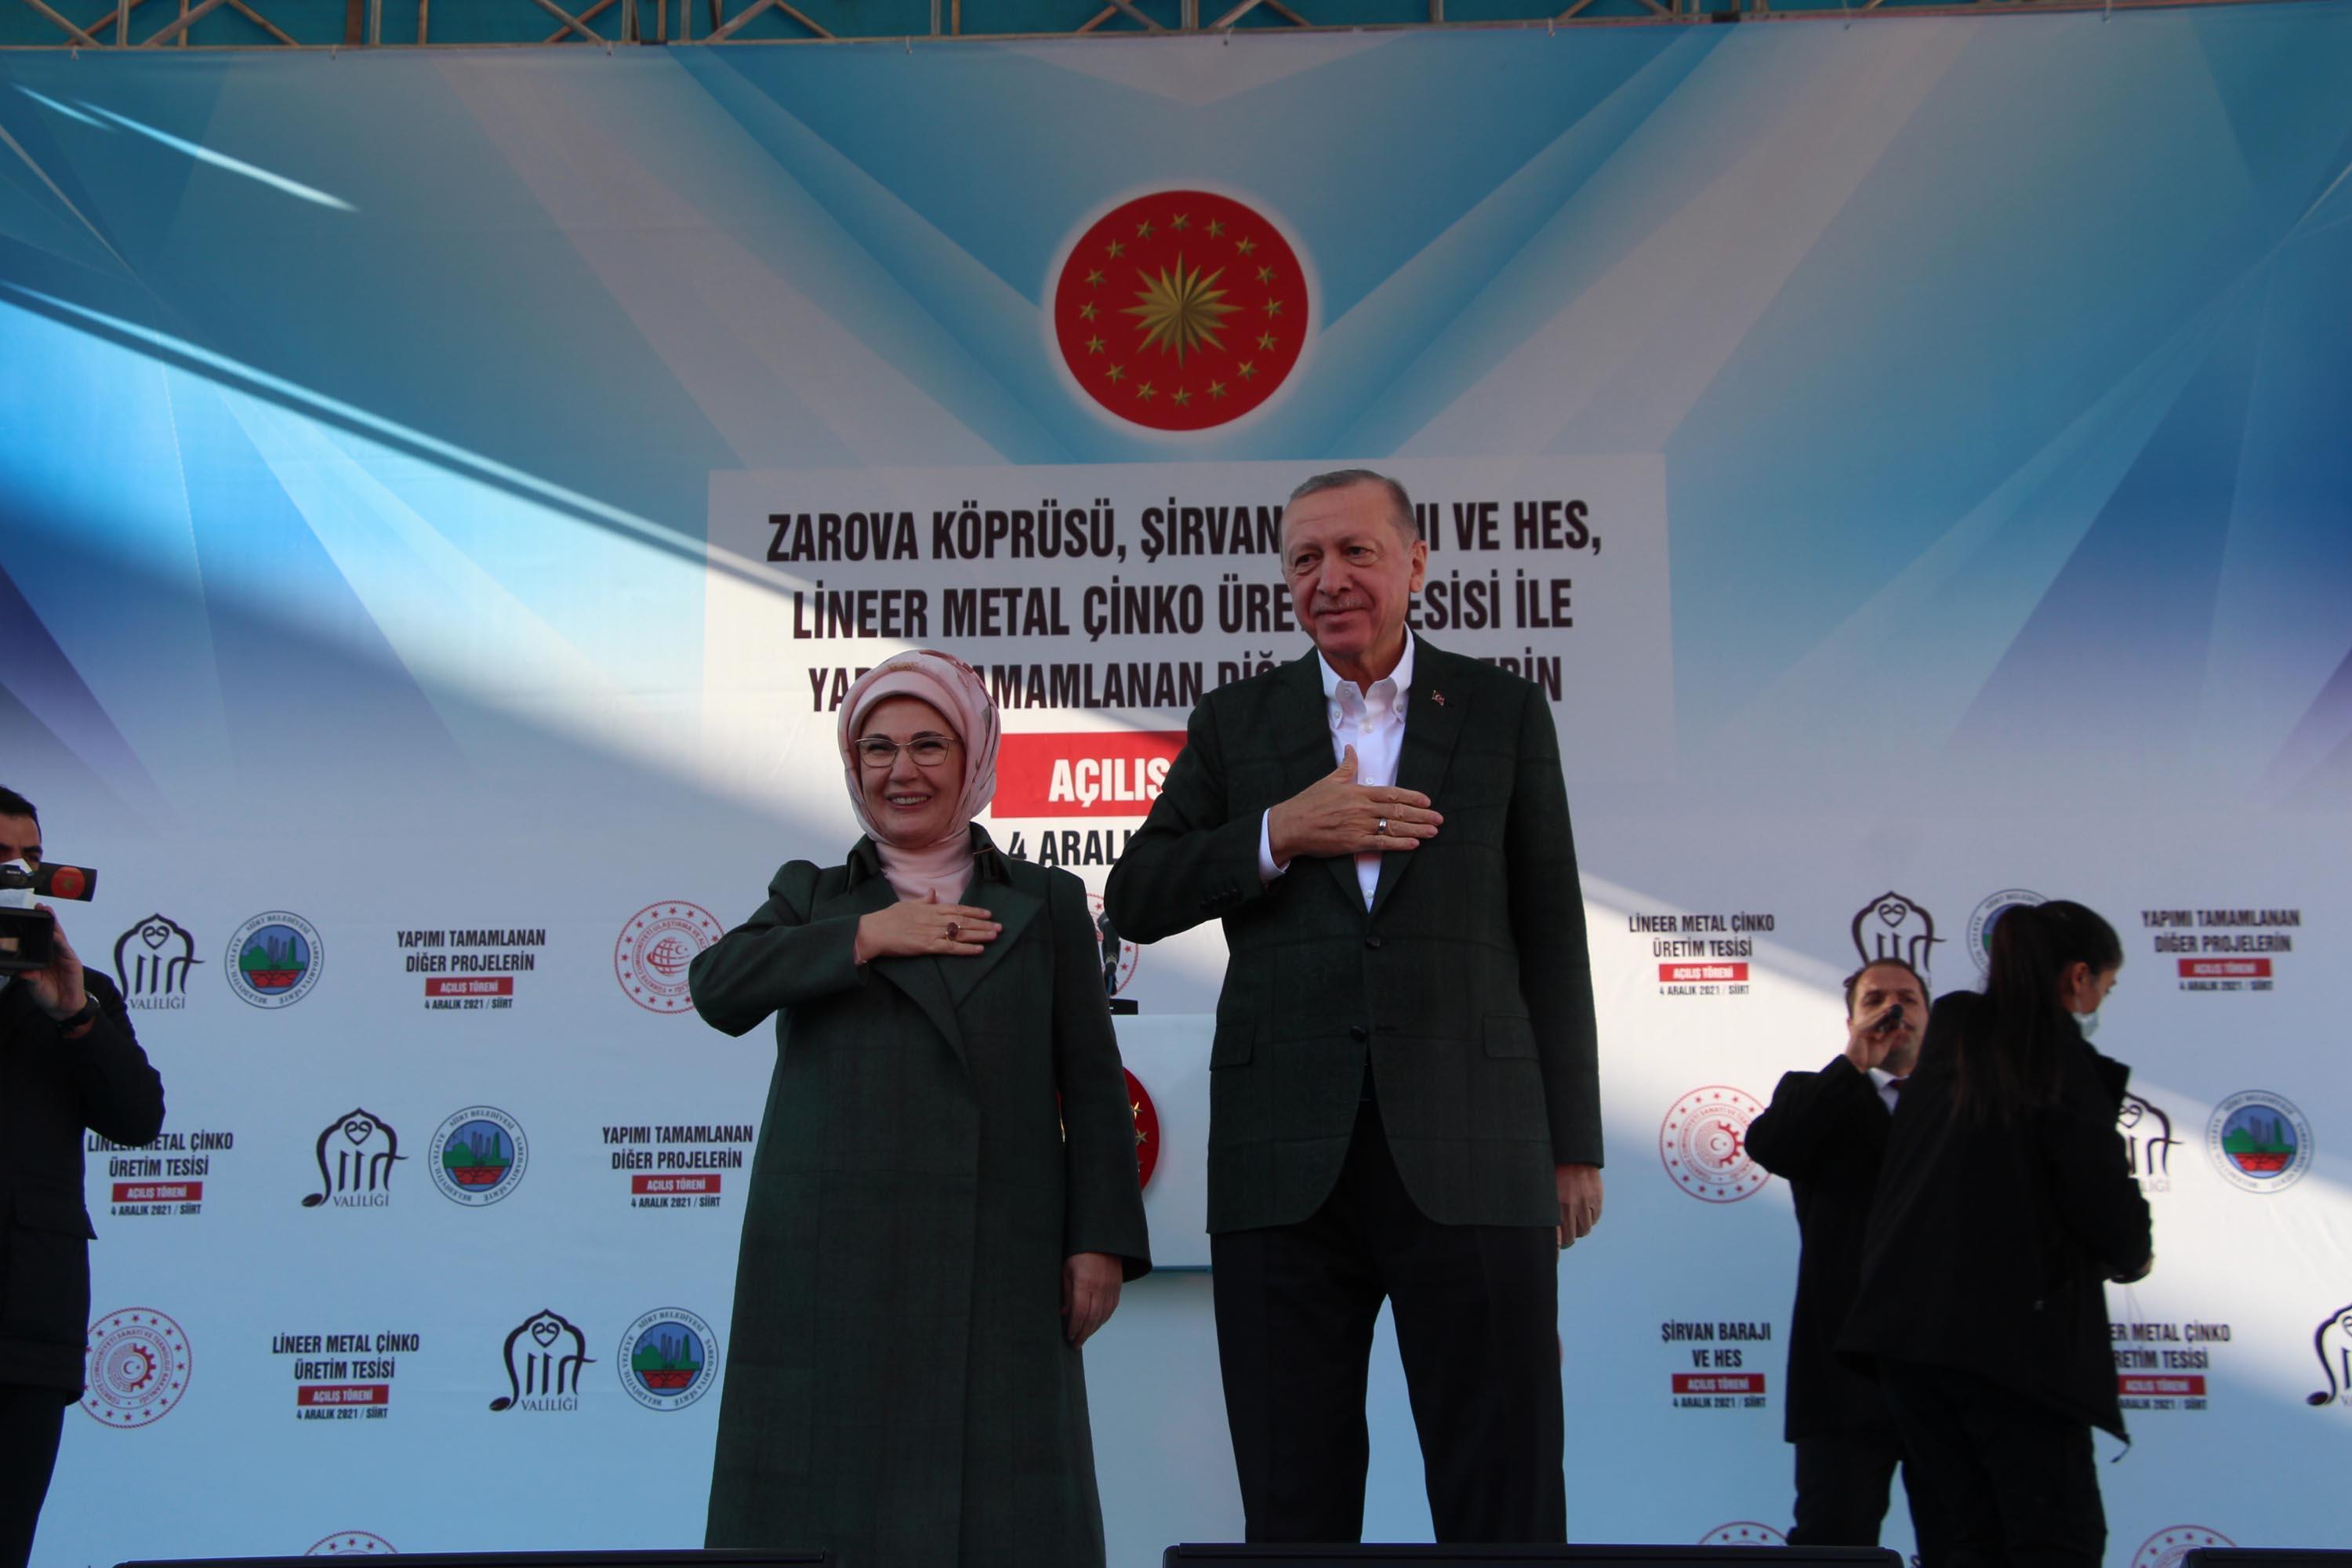 Cumhurbaşkanı Erdoğan: Devletin kurumları senin şamar oğlanın değil